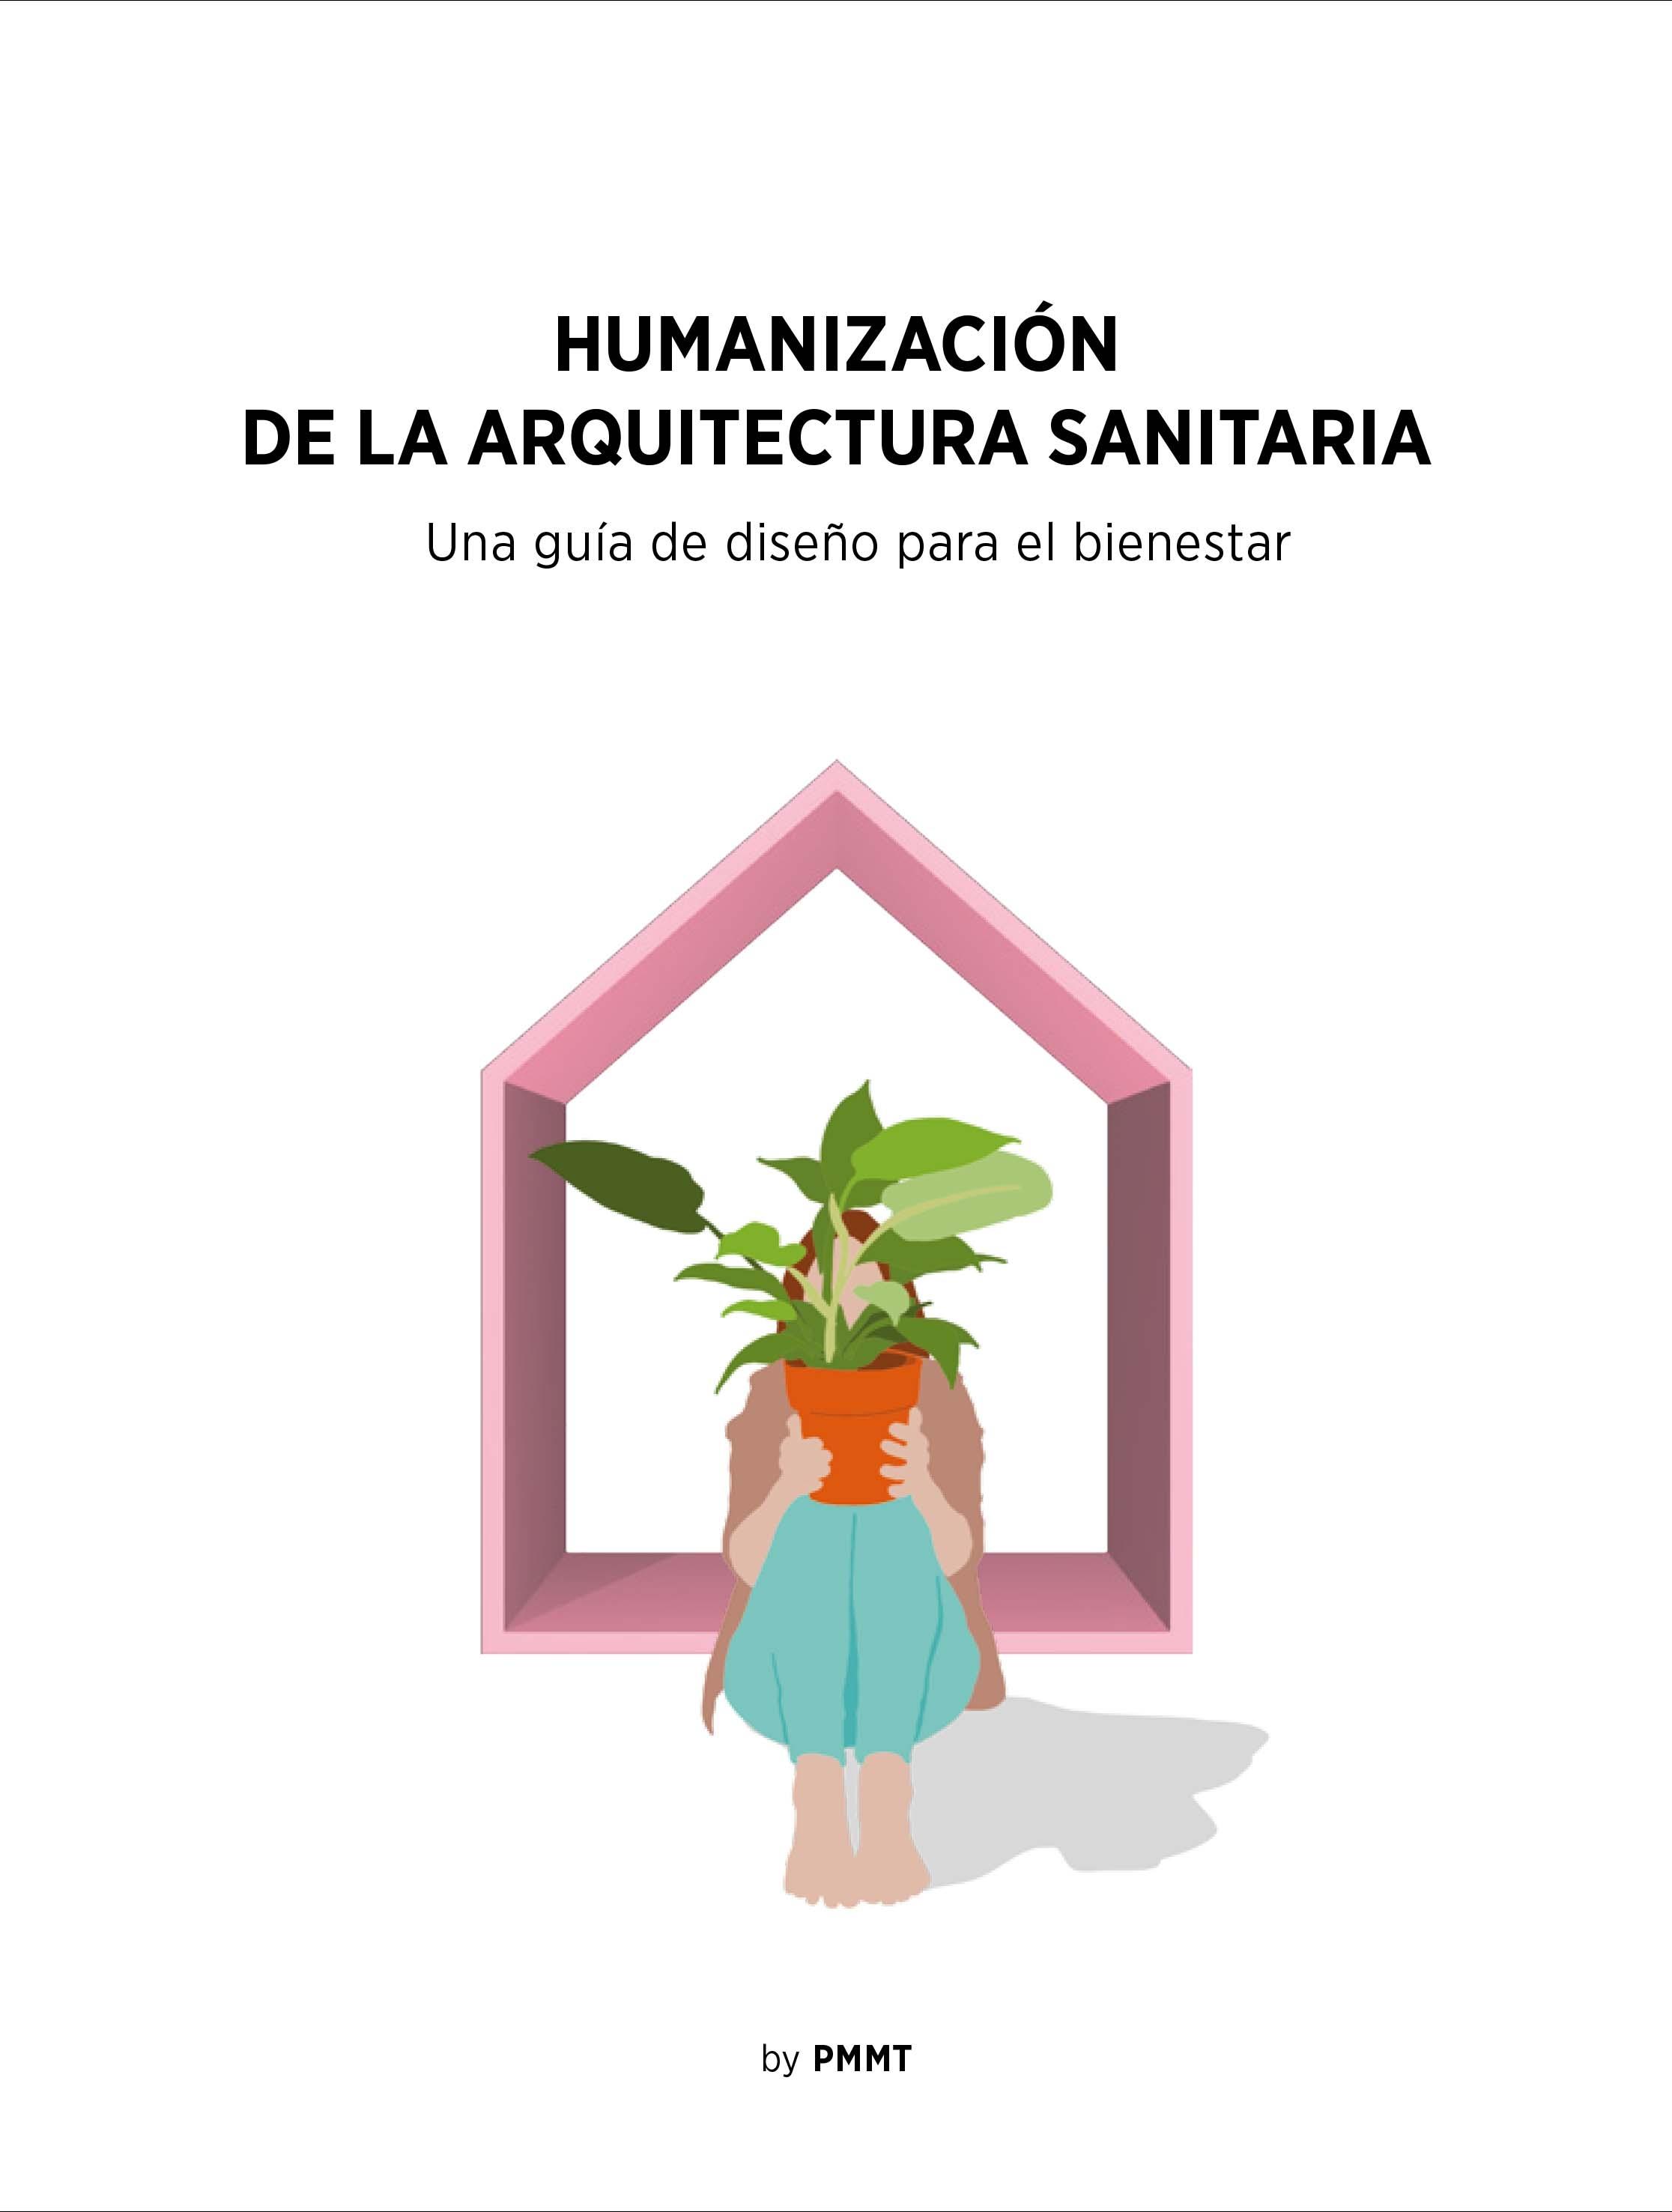 HUMANIZACION DE LA ARQUITECTURA SANITARIA "UNA GUÍA DE DISEÑO PARA EL BIENESTAR". 